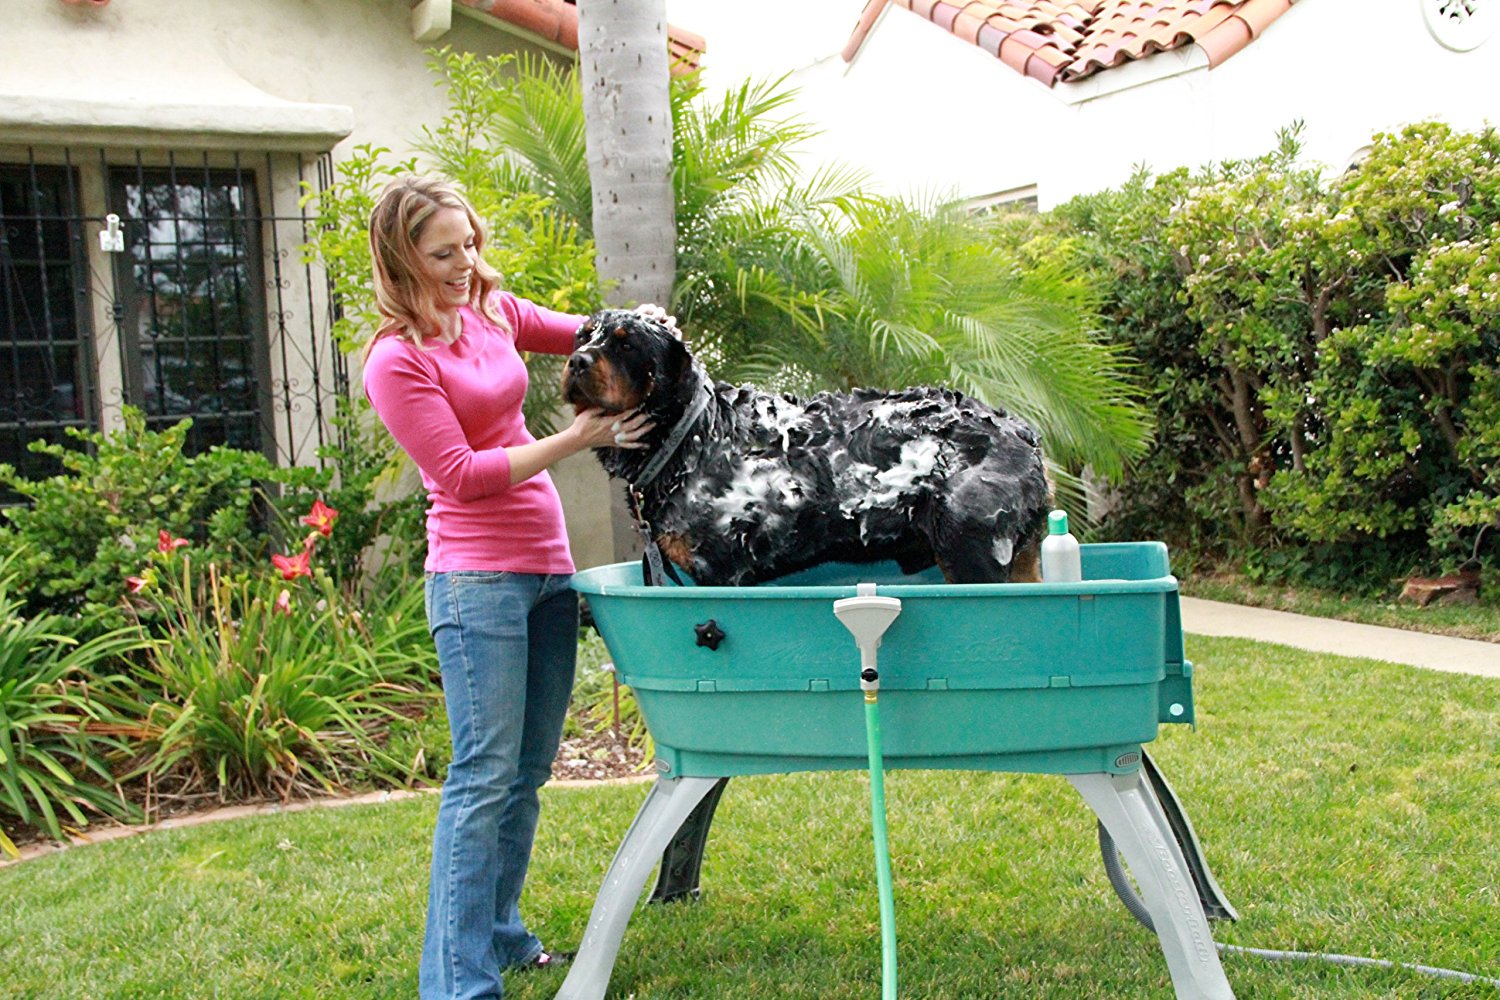 dog bath tub pets at home